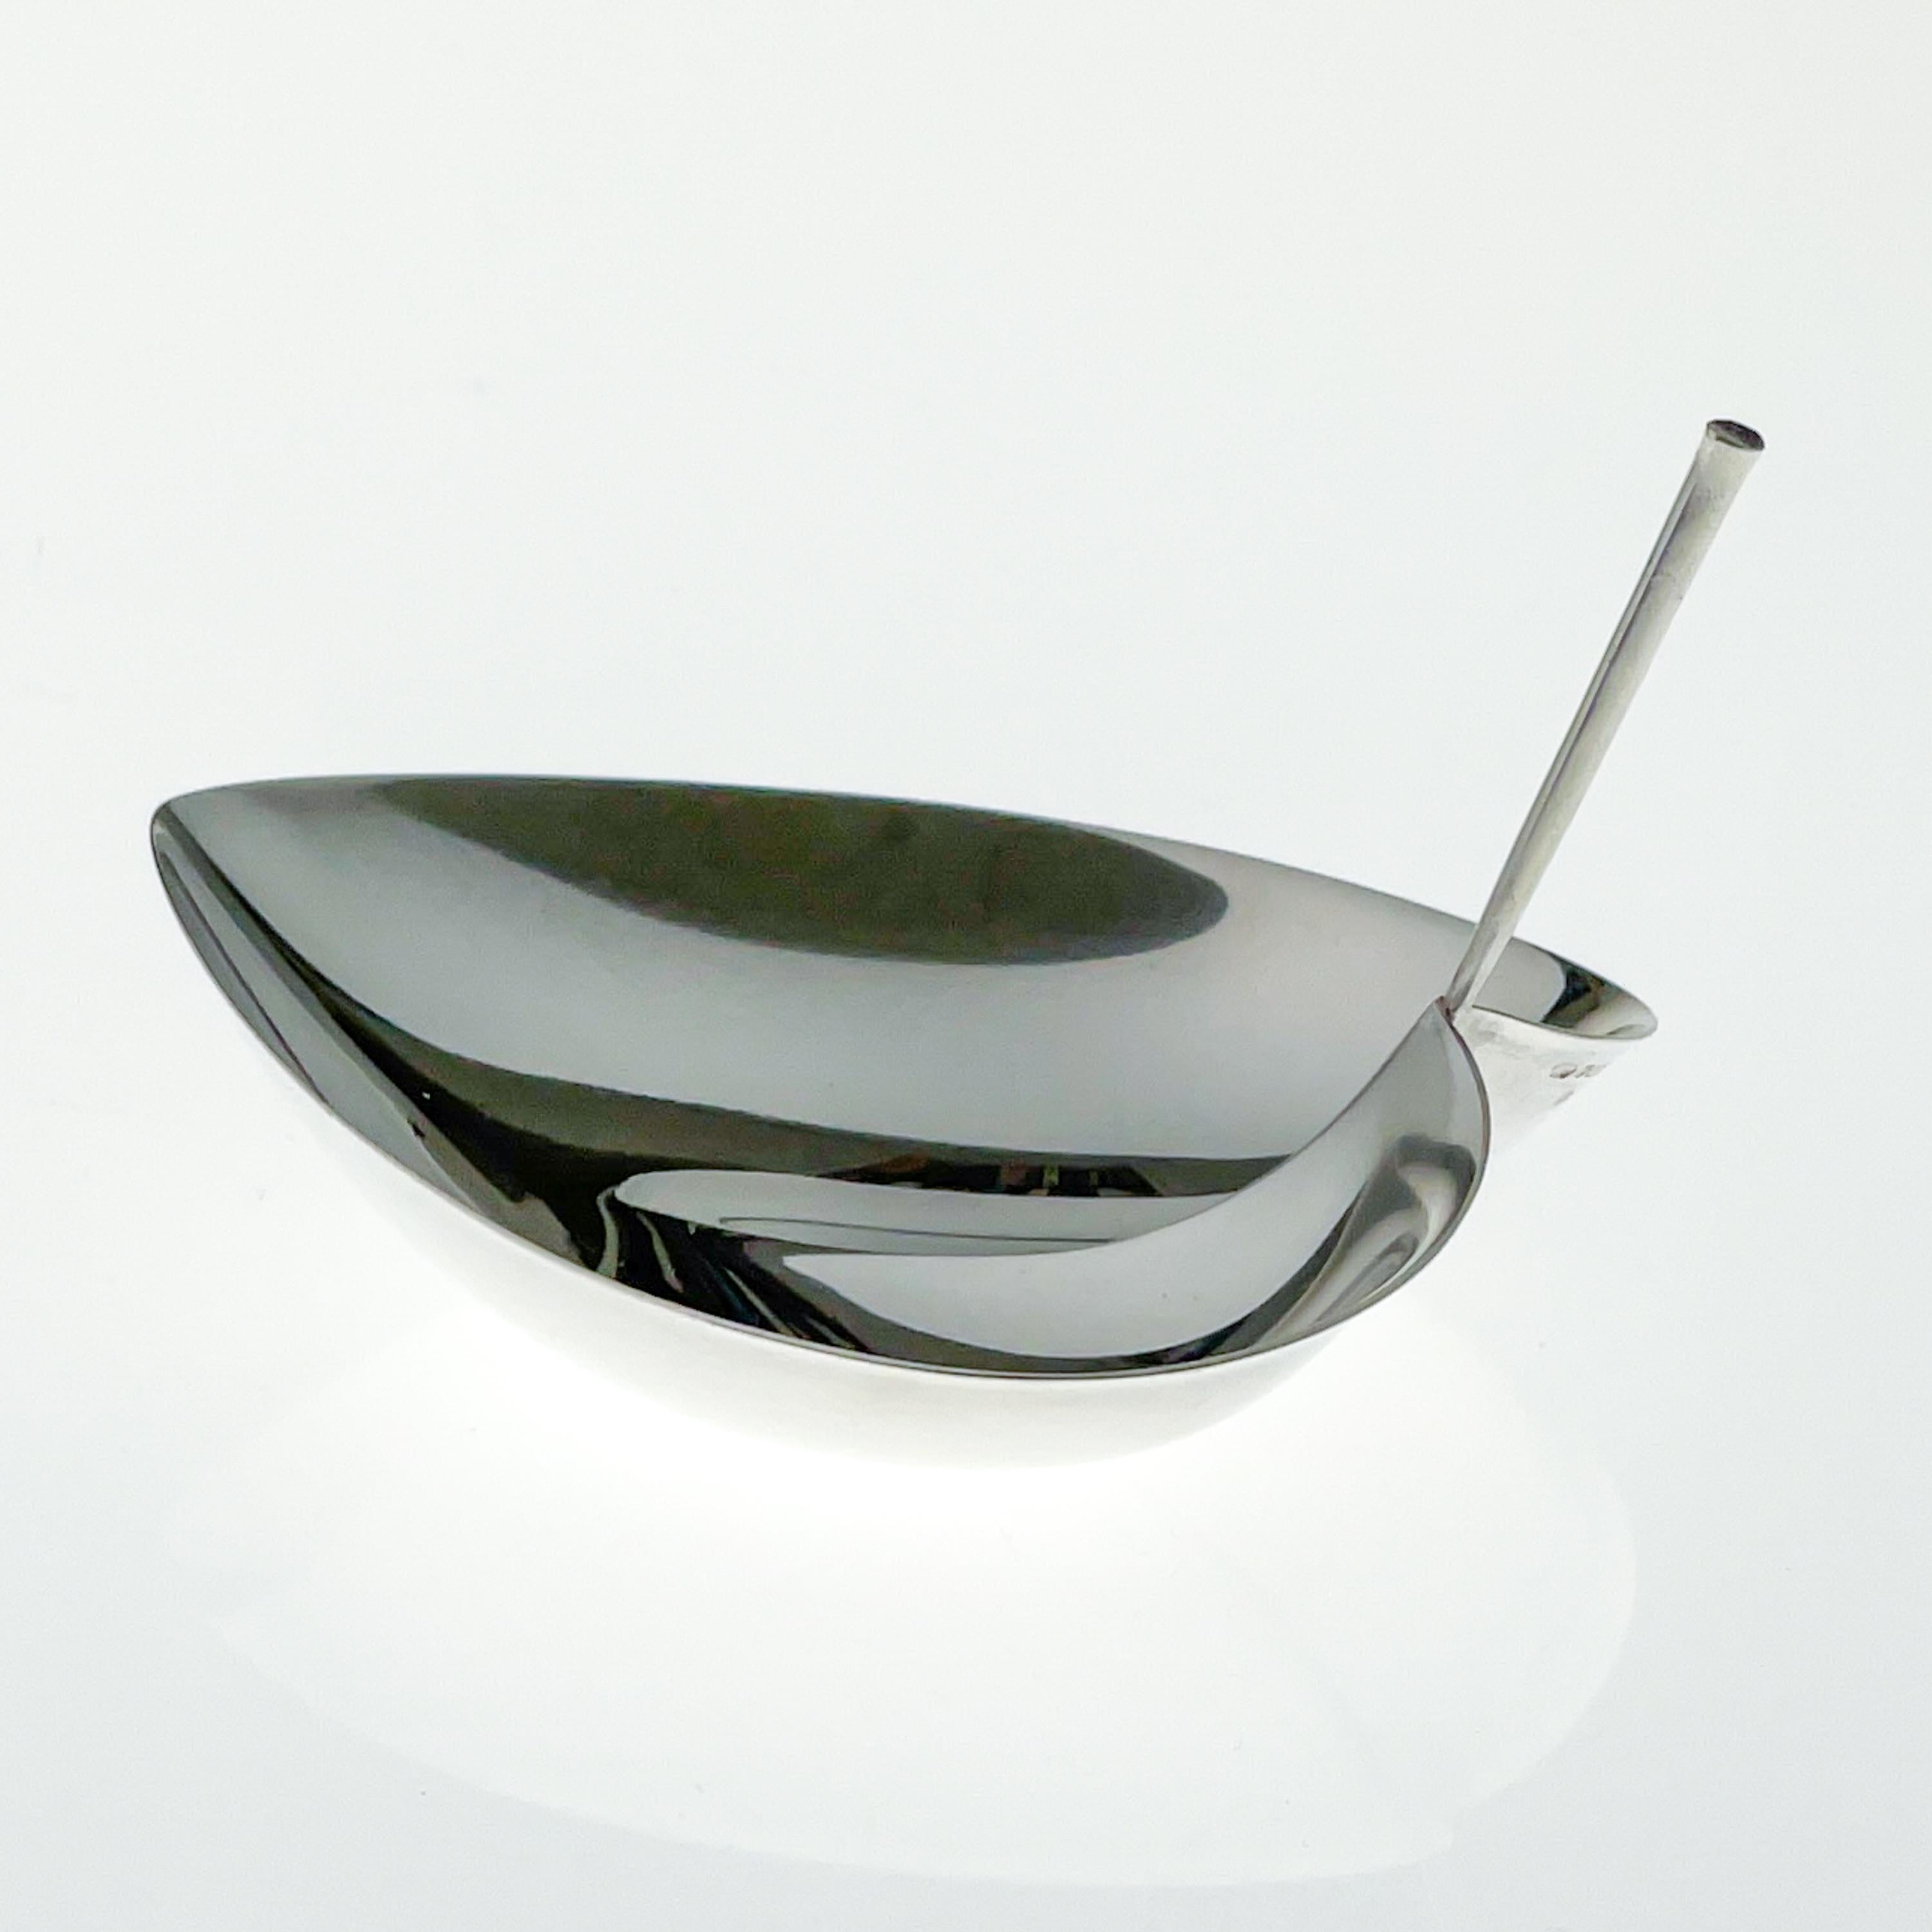 Scandinavian Modern Tapio Wirkkala, Sterling Silver Leaf-Shaped Bowl, Model TW 4, Kultakeskus, 1963